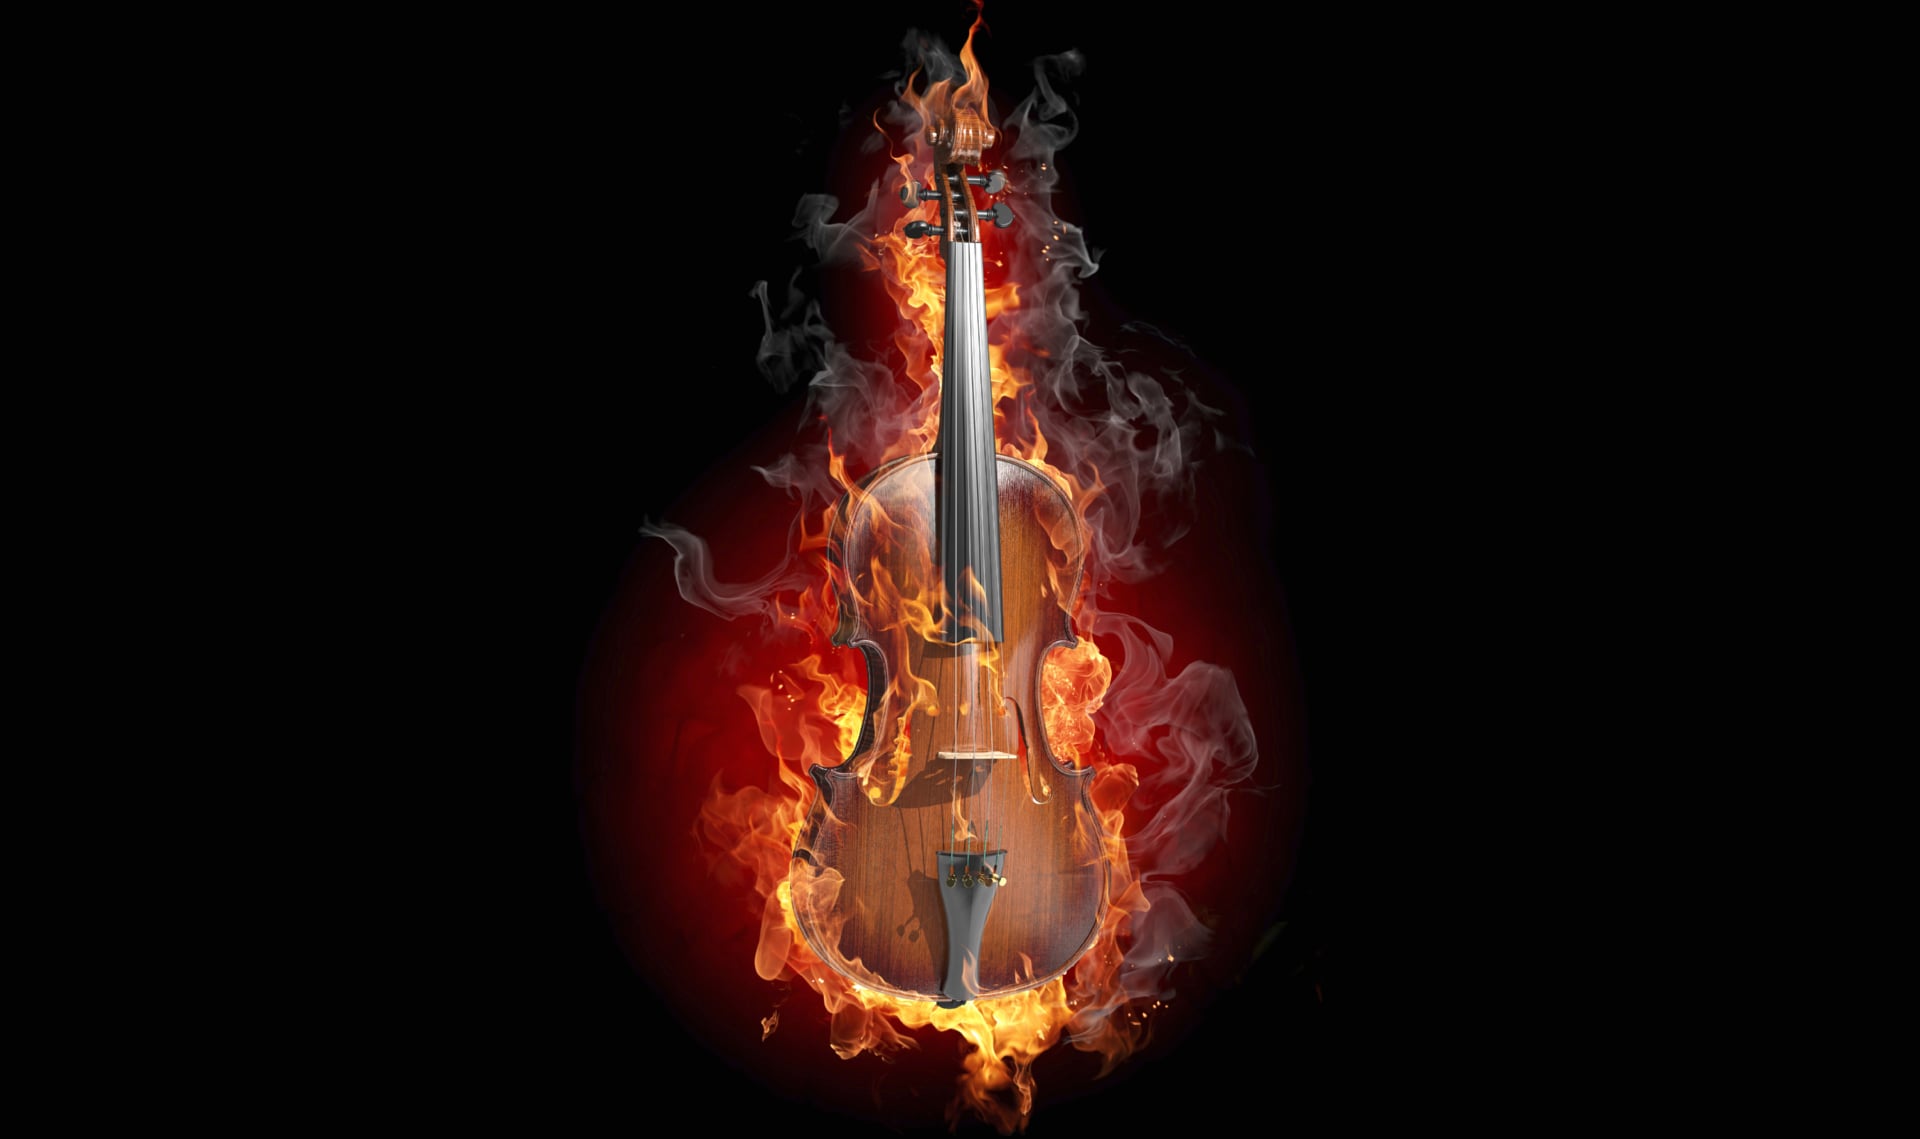 Digital Art Violin at 1024 x 1024 iPad size wallpapers HD quality